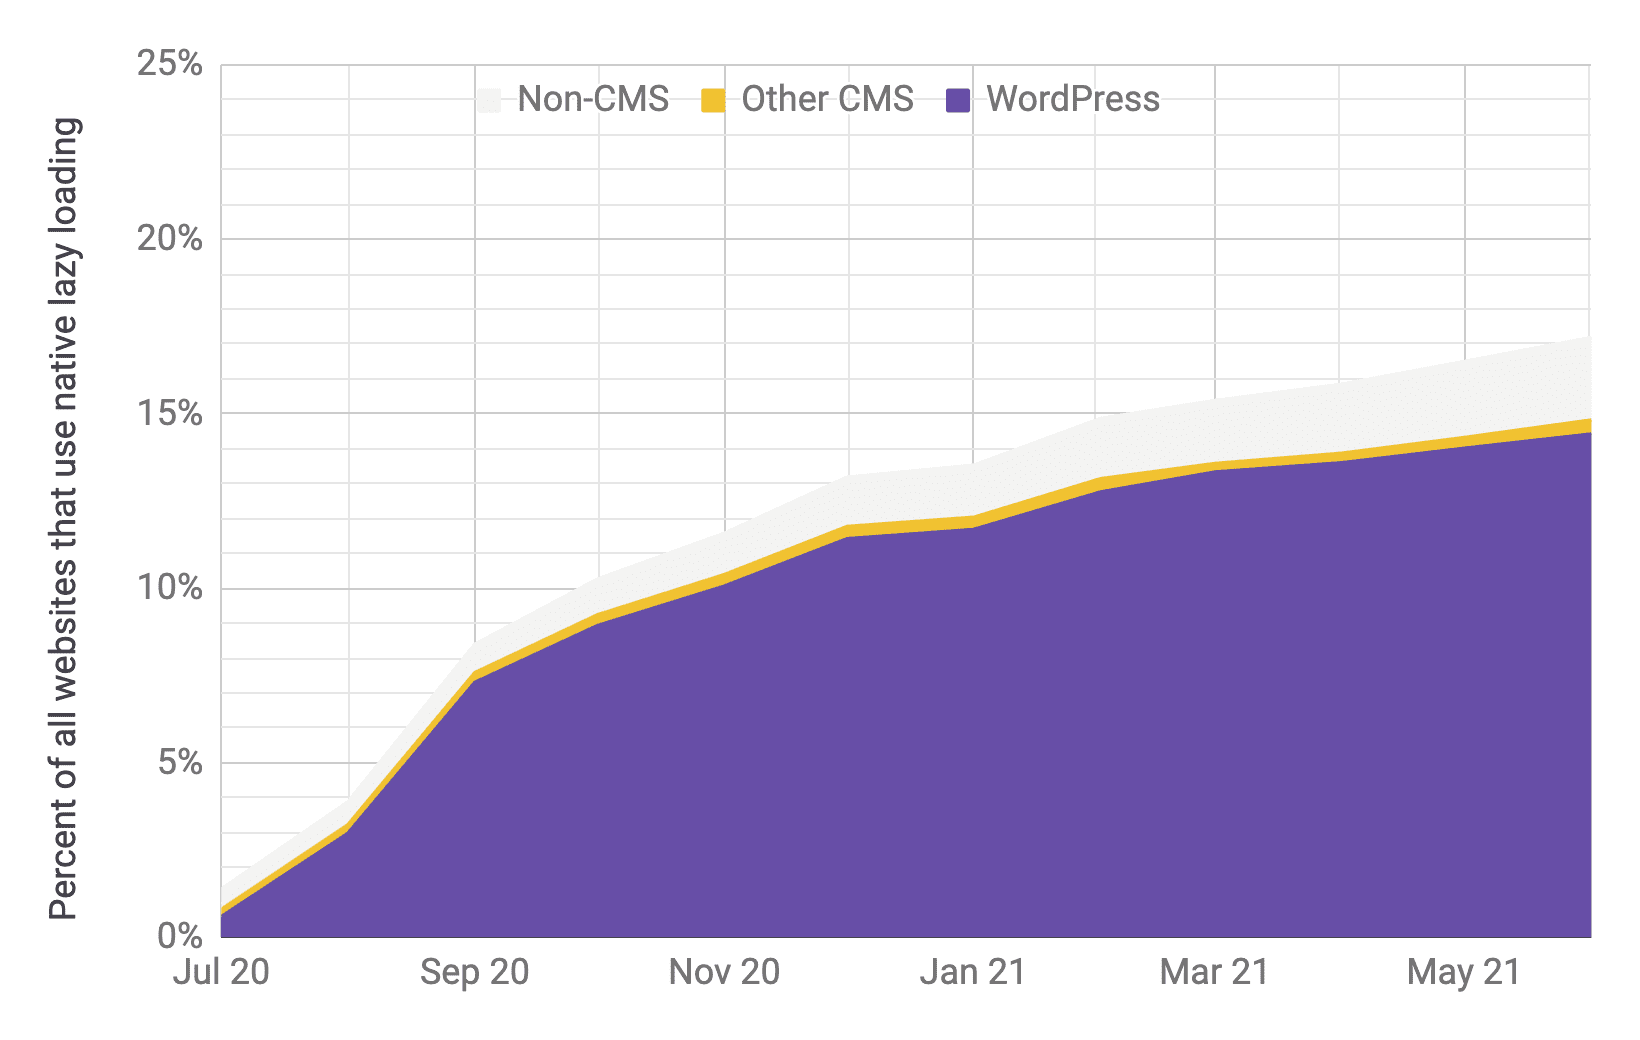 الرسم البياني للسلسلة الزمنية الذي يستند إلى استخدام التحميل الكسول، مع كون WordPress هو العامل الأكثر أهمية مقارنةً بأنظمة إدارة المحتوى (CMS) الأخرى وغير ذلك من أنظمة إدارة المحتوى، مع نِسب نسب مشابهة إلى الرسم البياني السابق. يتبيّن لي أنّ إجمالي معدّل الانتقال قد ازداد سريعًا من% 1 إلى% 17 في الفترة من تموز (يوليو) 2020 إلى حزيران (يونيو) 2021.